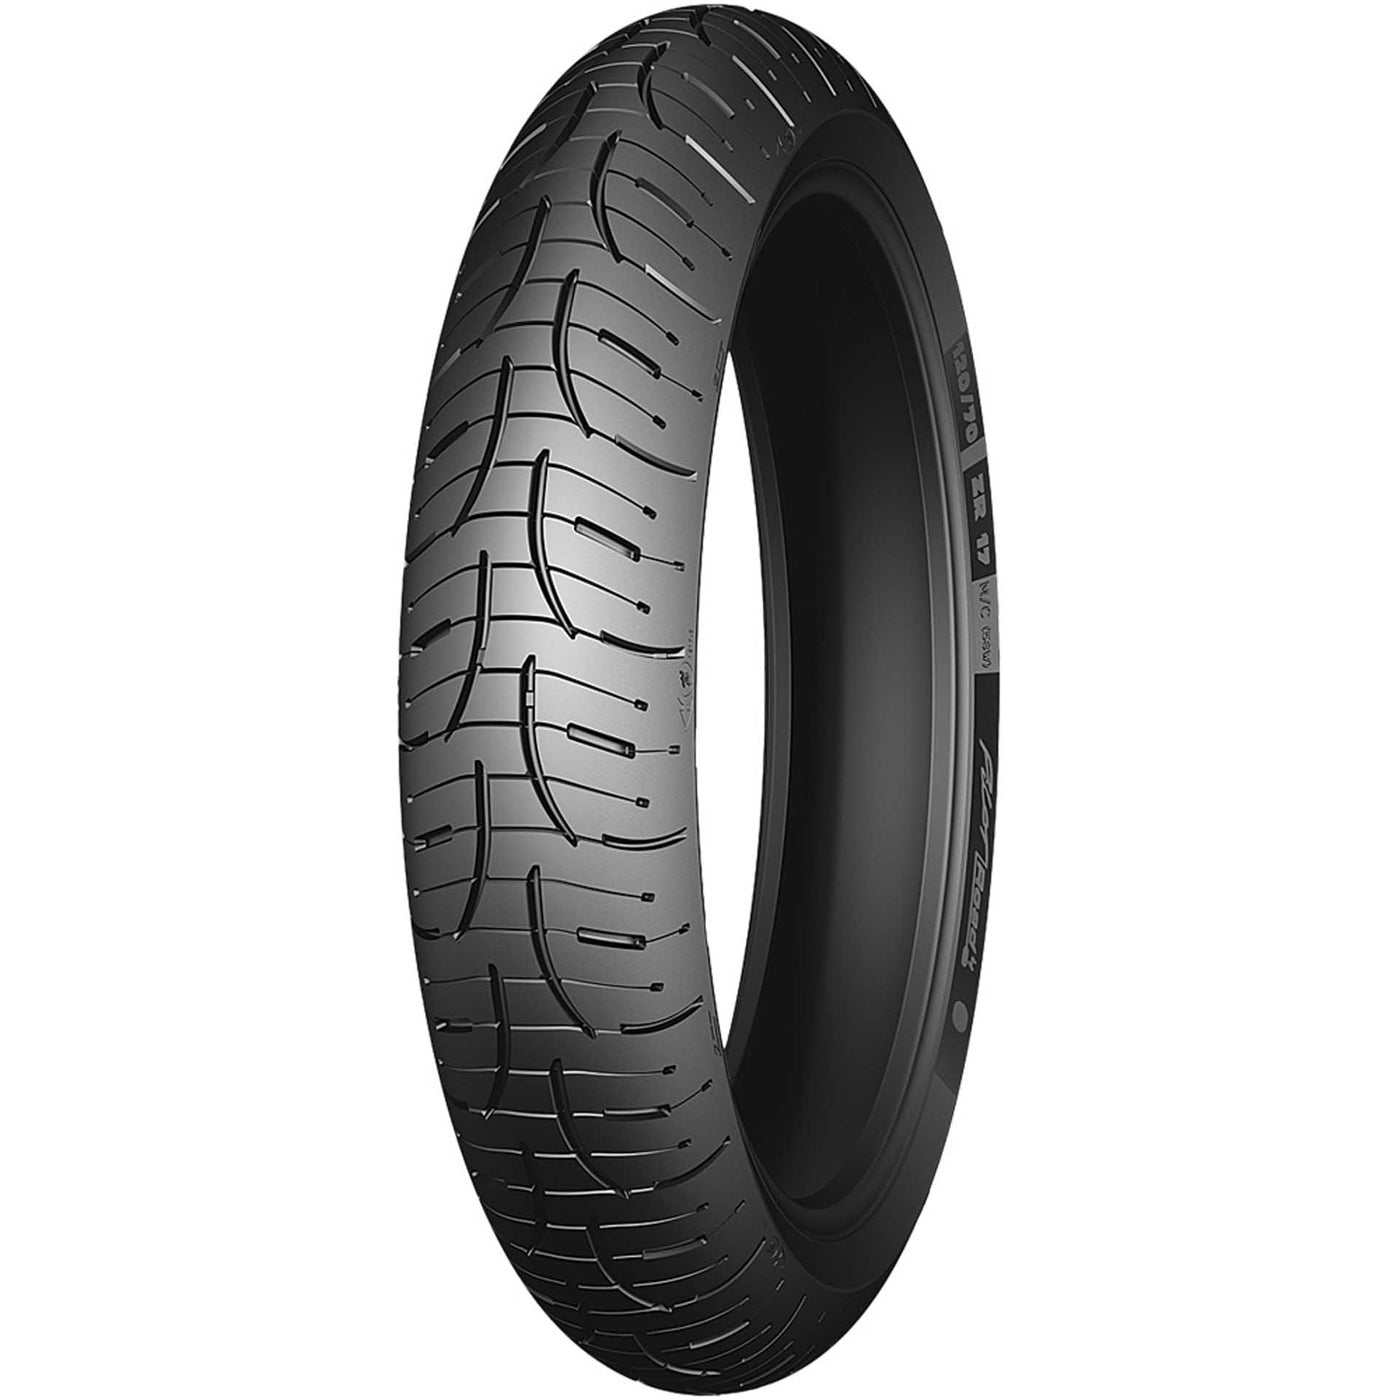 Michelin Pilot Road 4 Tire